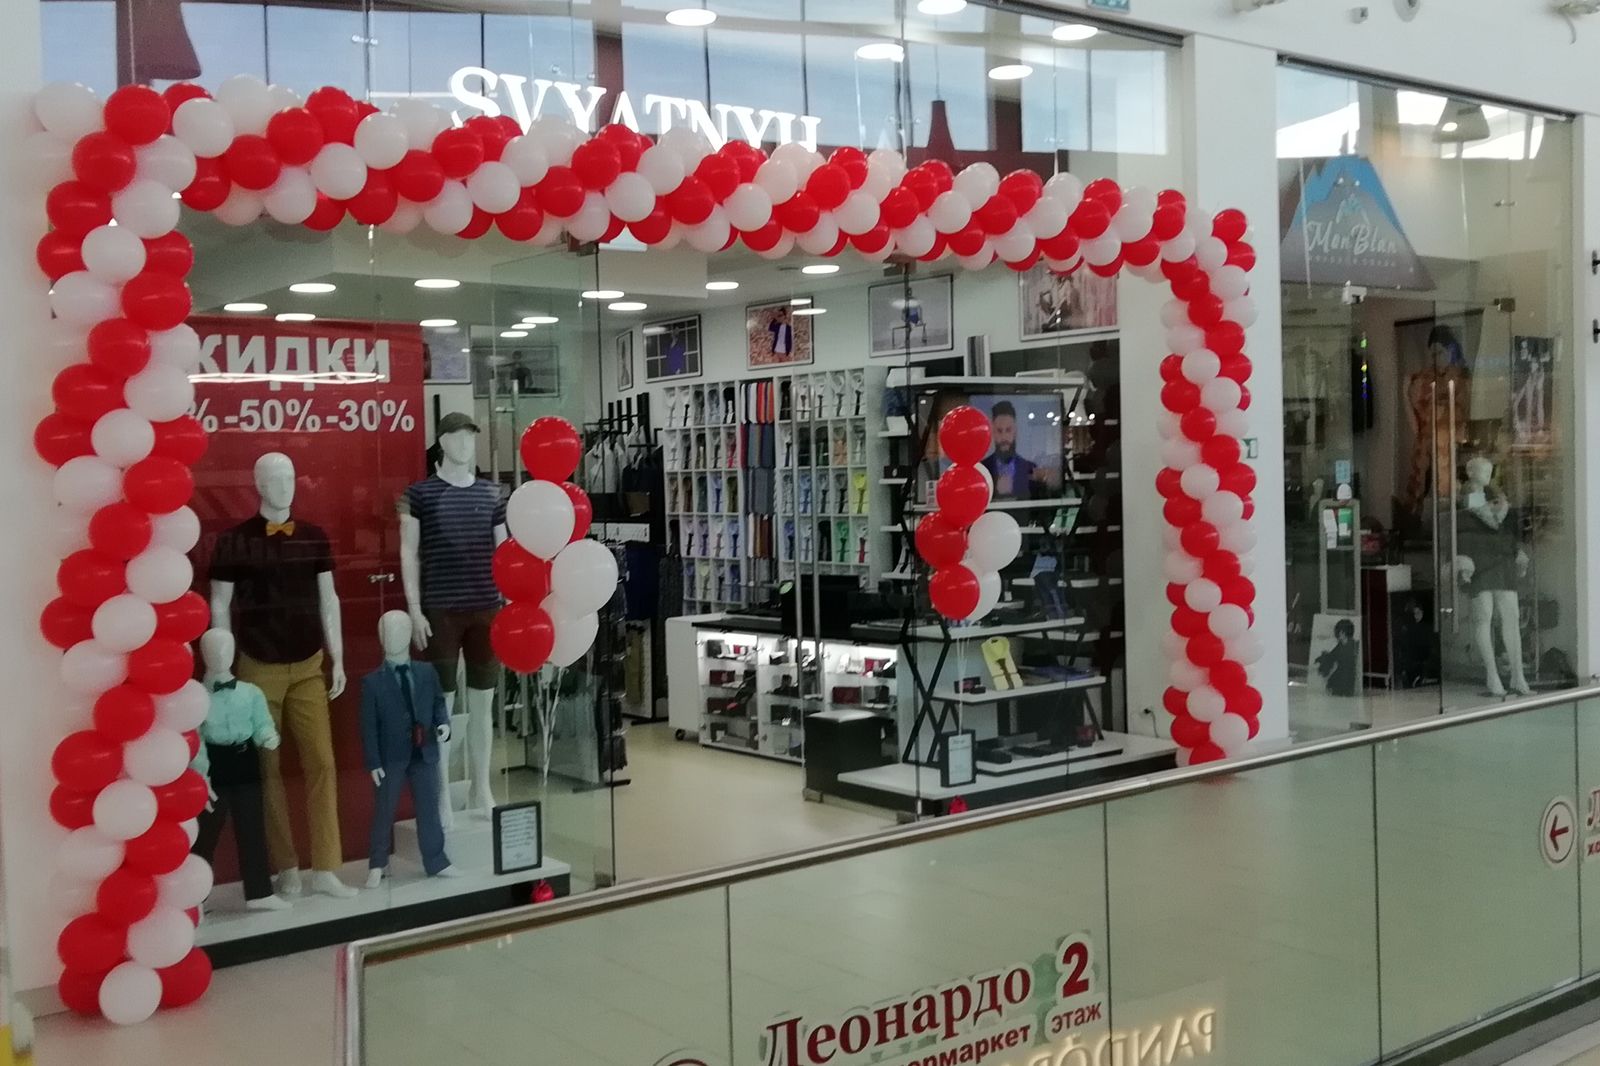 Магазины Одежды В Аквамолле Ульяновск